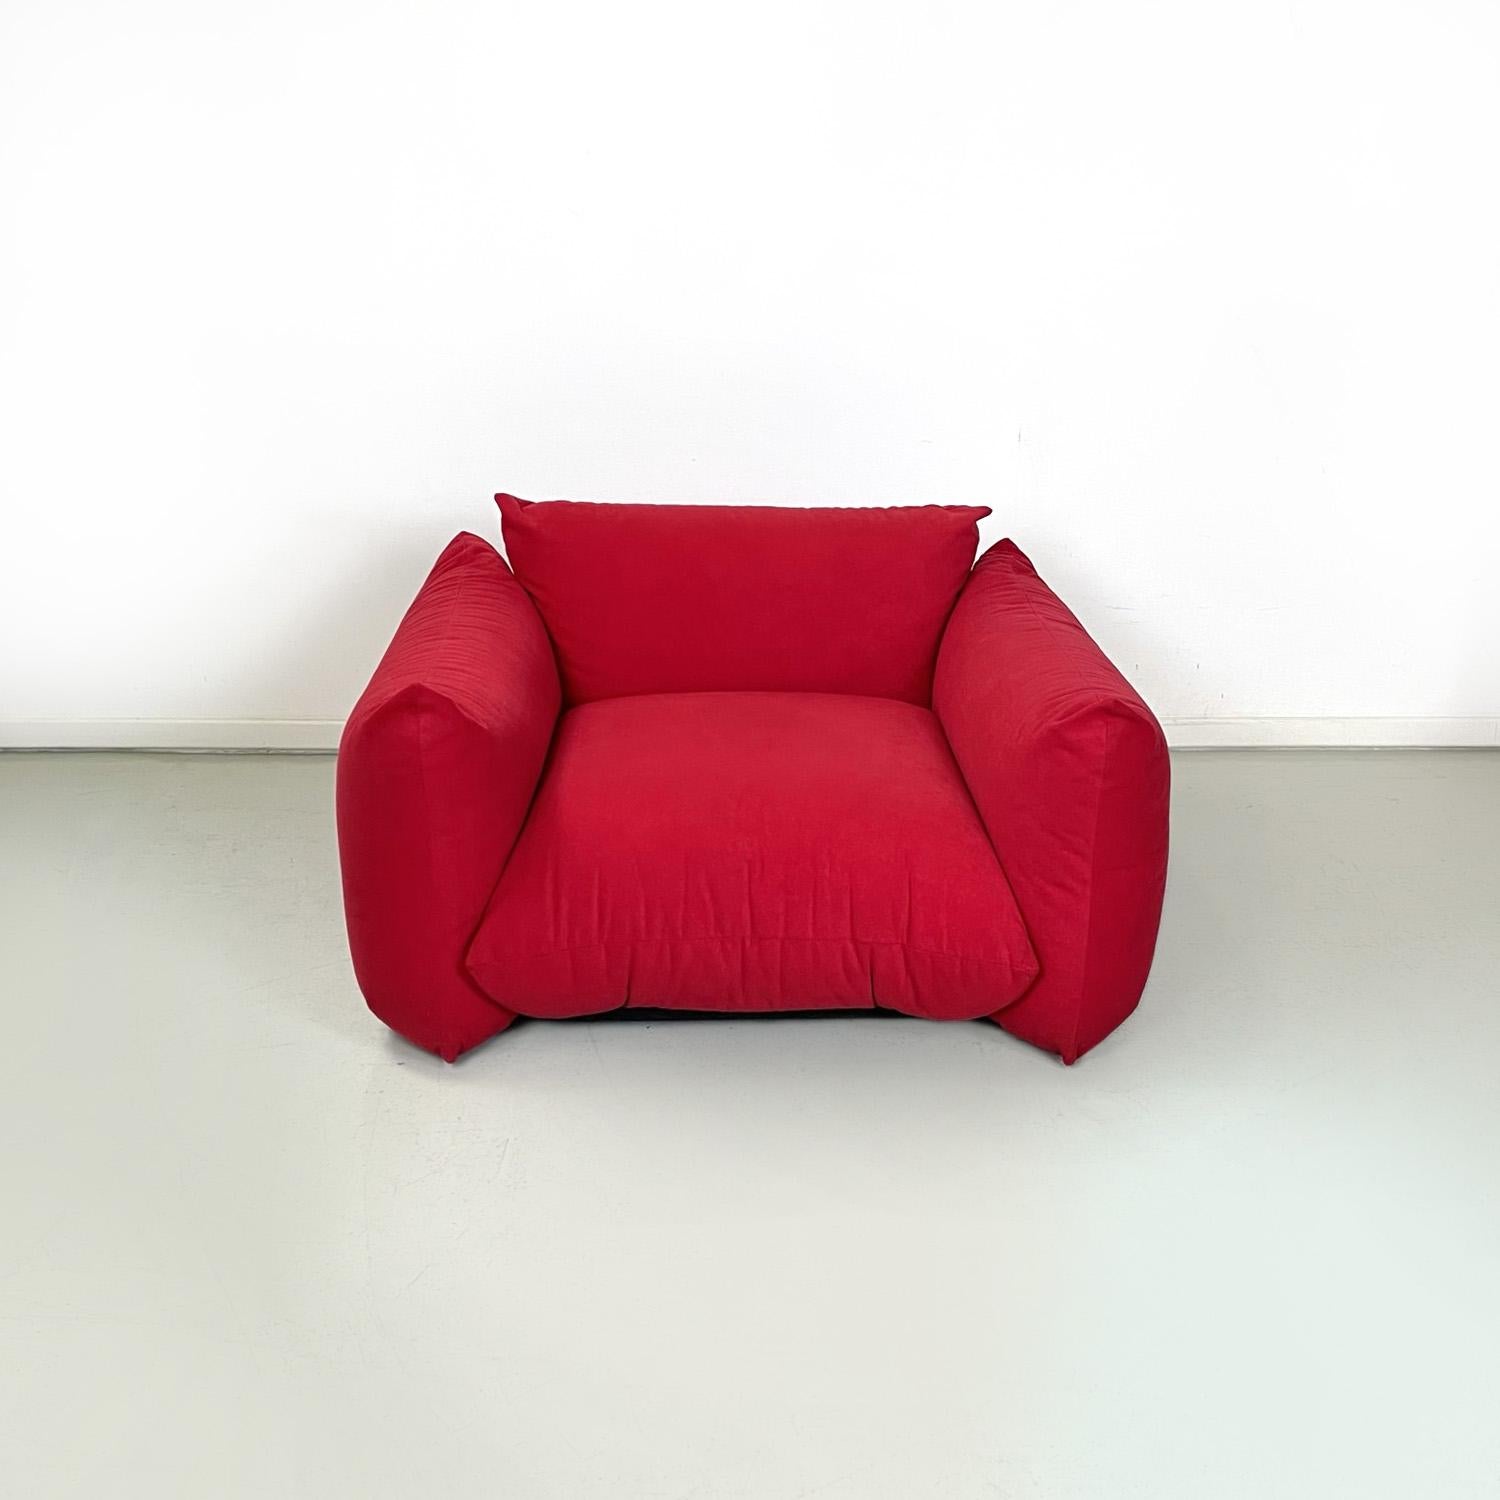 Fauteuil moderne italien rouge Marenco par Mario Marenco pour Arflex, 1970
Fauteuil carré mod. Marenco. L'assise et le dossier sont composés de deux coussins rembourrés recouverts d'un tissu rouge de type alcantara, de même que les deux